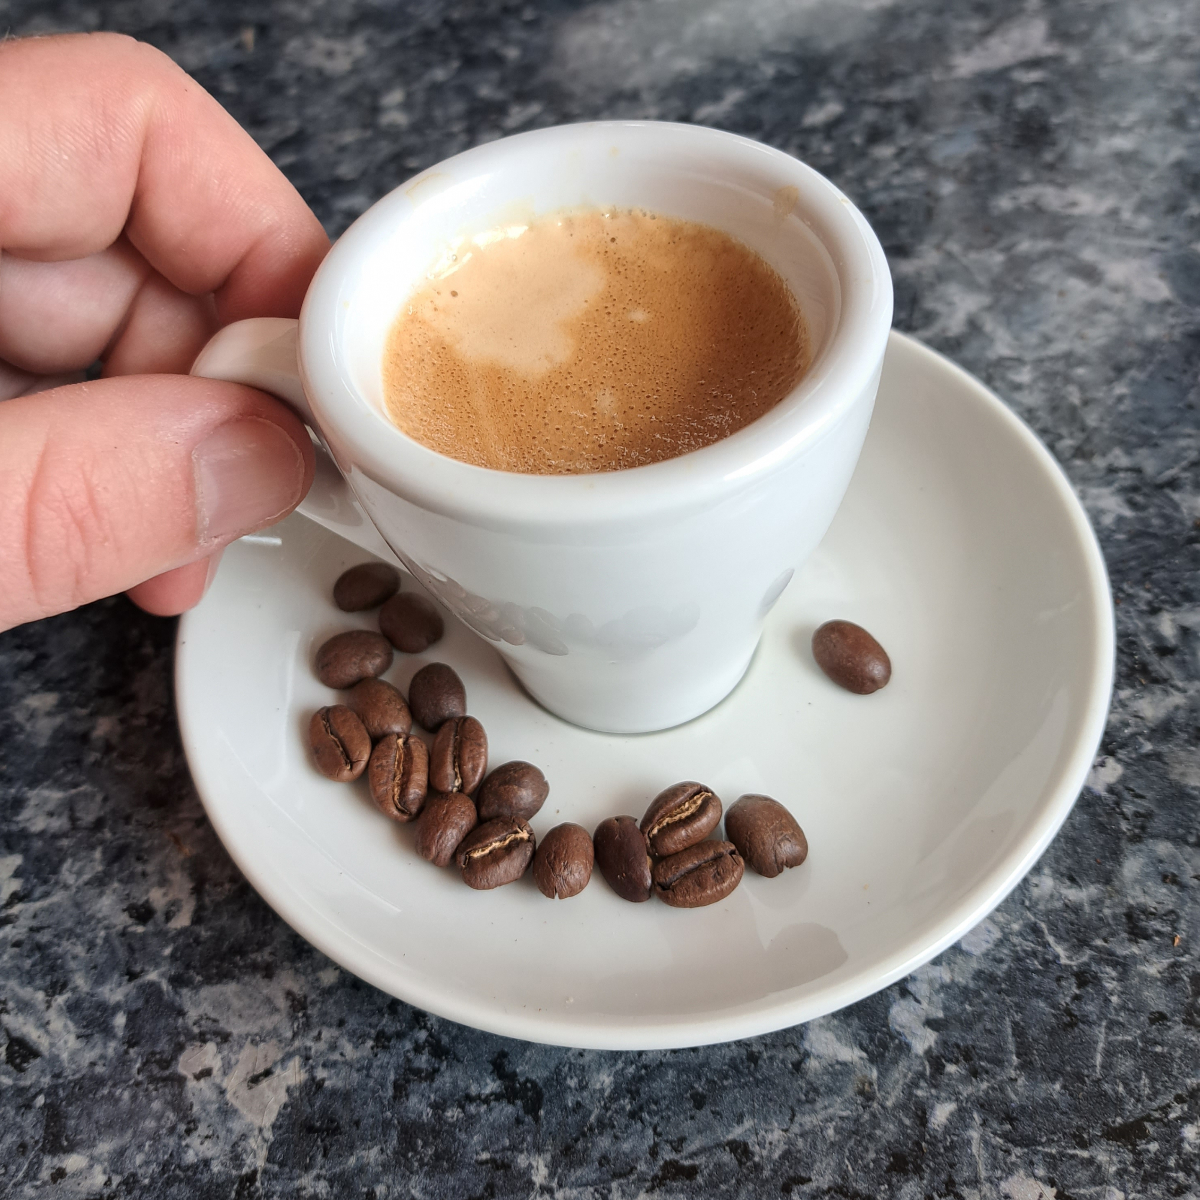 Frisch zubereiteten Espresso Siebträger in einer Espressotasse, umgeben von Kaffeebohnen auf einem Espresso-Unterteller. Eine Hand hält die Tasse und ist bereit, den Espresso zu genießen.